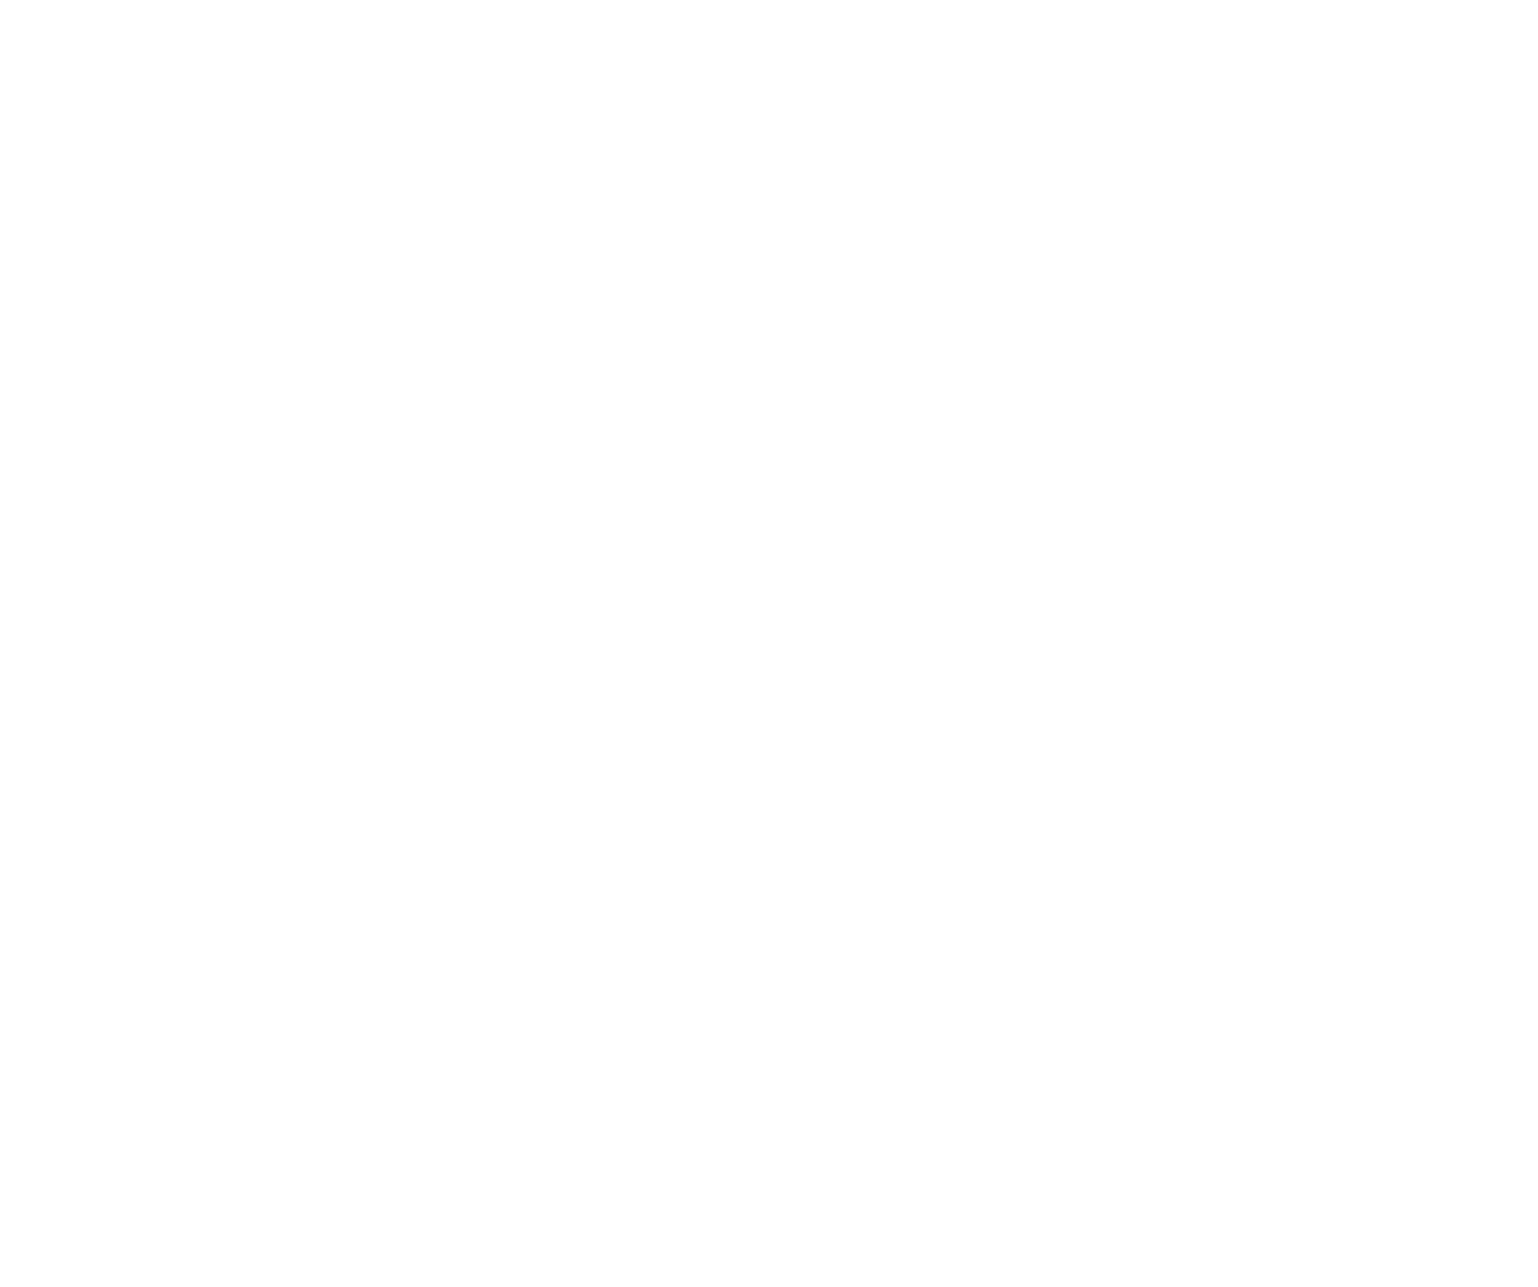 Nissan logo pour fonds sombres (PNG transparent)